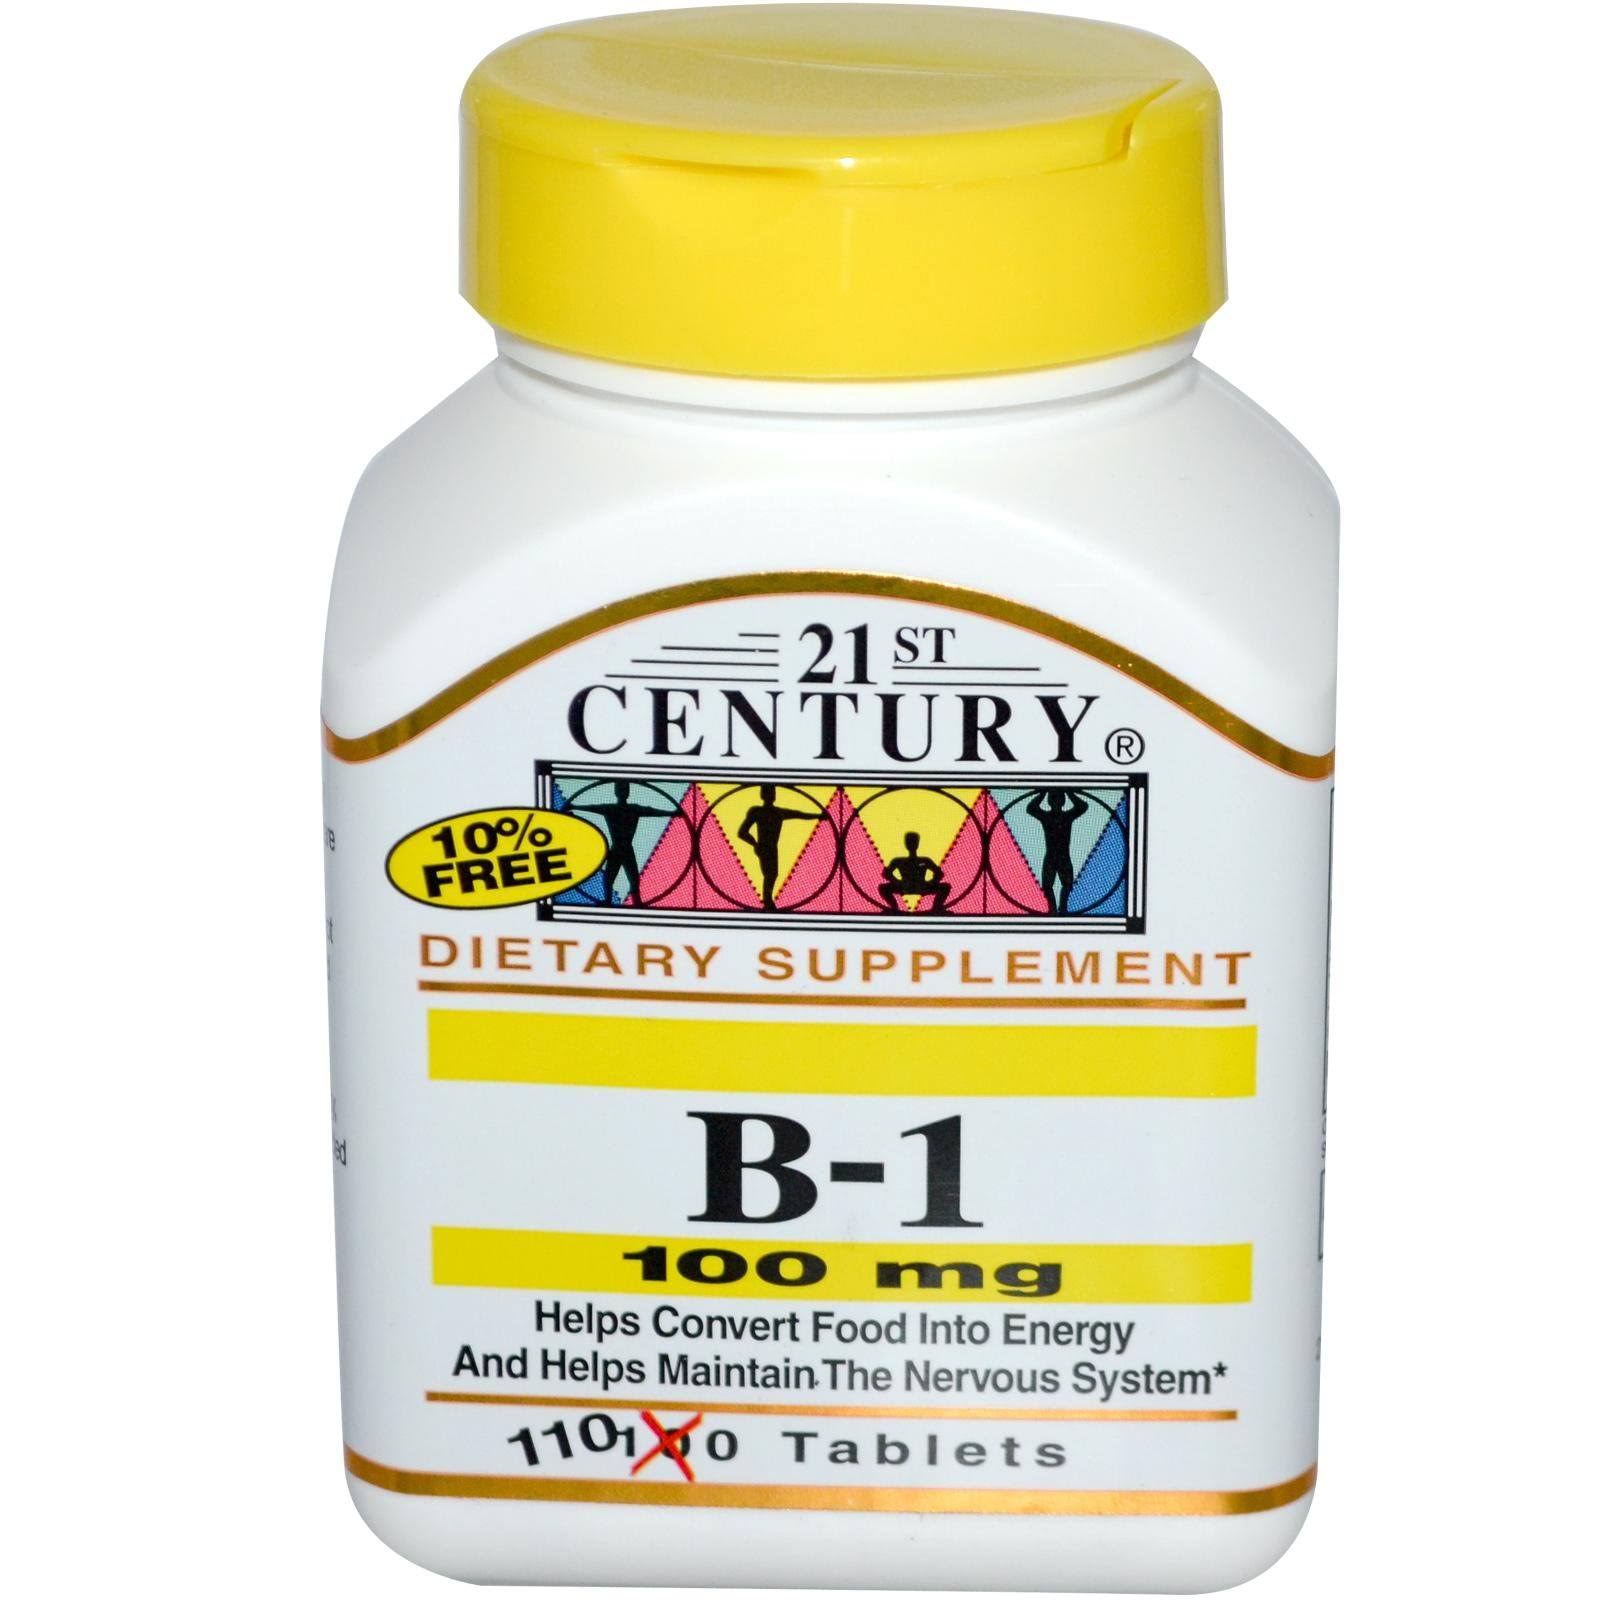 21st Century B-1 Dietary Supplement - 100mg, 110ct